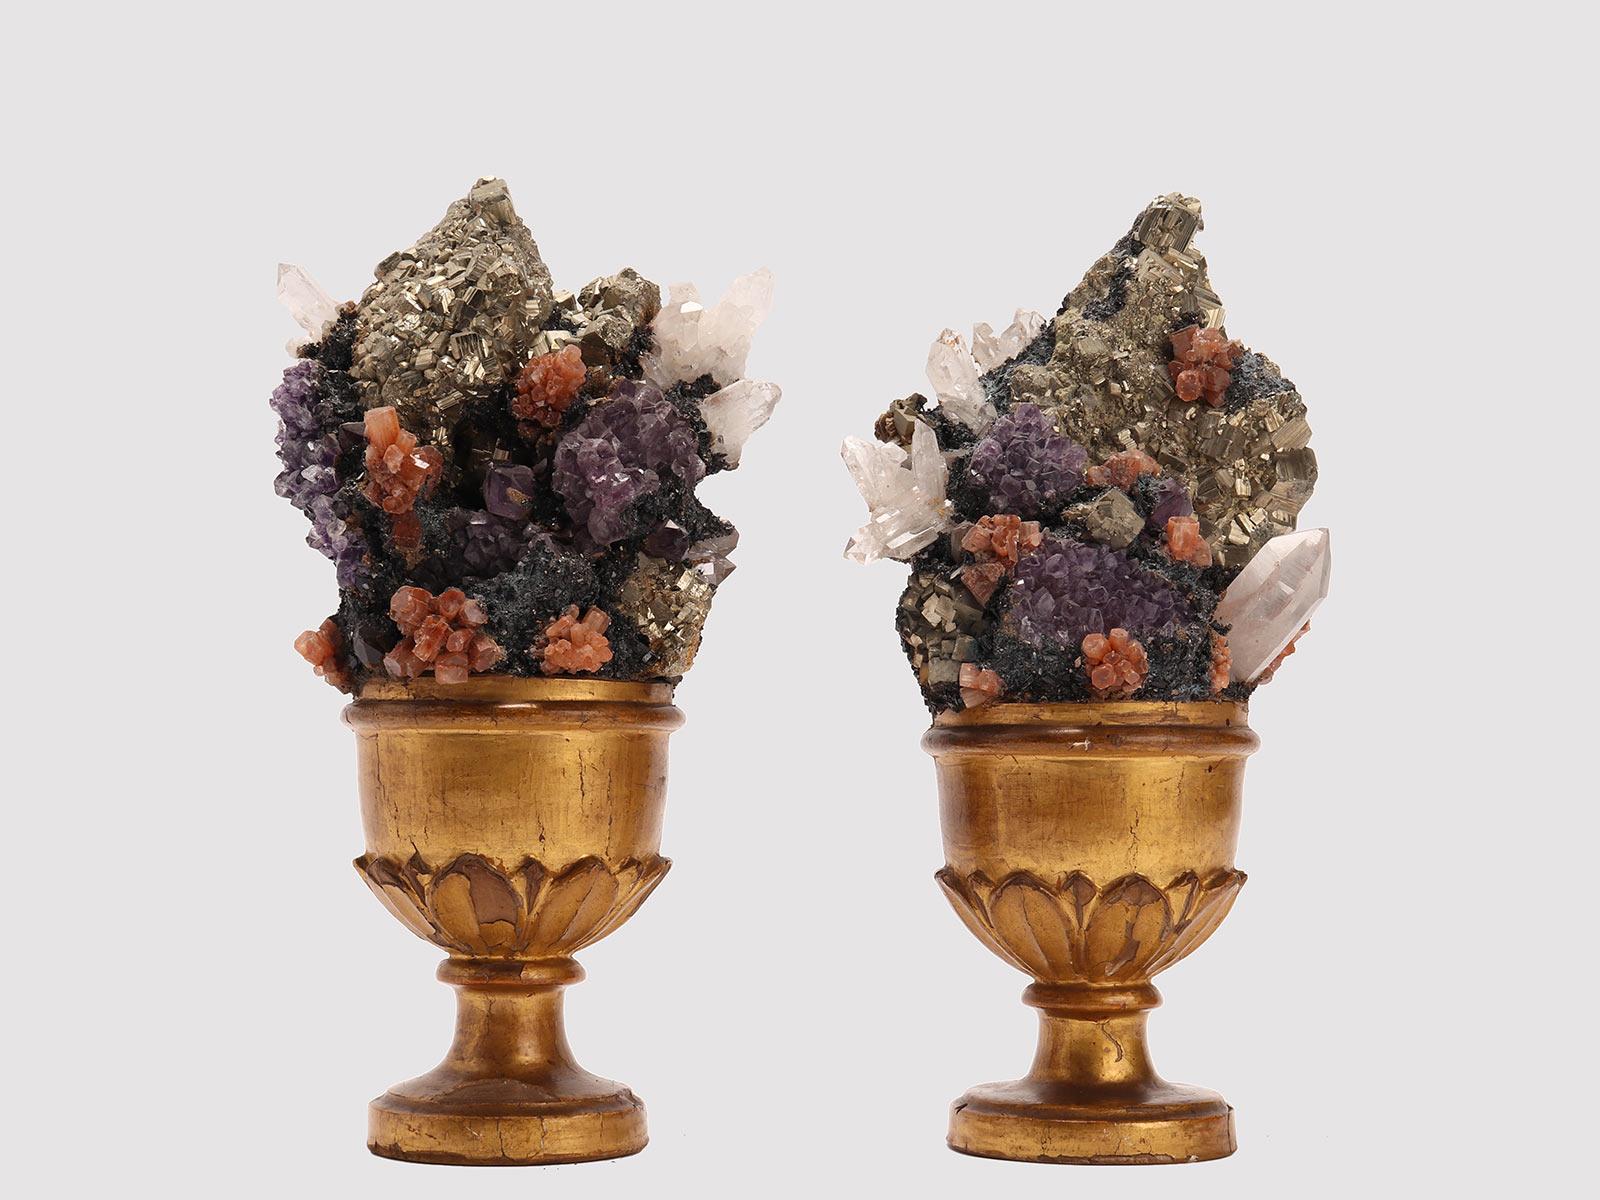 Paire de spécimens minéraux Naturalia : une paire de cristaux de roche d'améthyste, d'aragonite et de pyrite druzes, montés sur un socle en bois plaqué Guild sur une forme de vase avec des feuilles. Italie vers 1880.